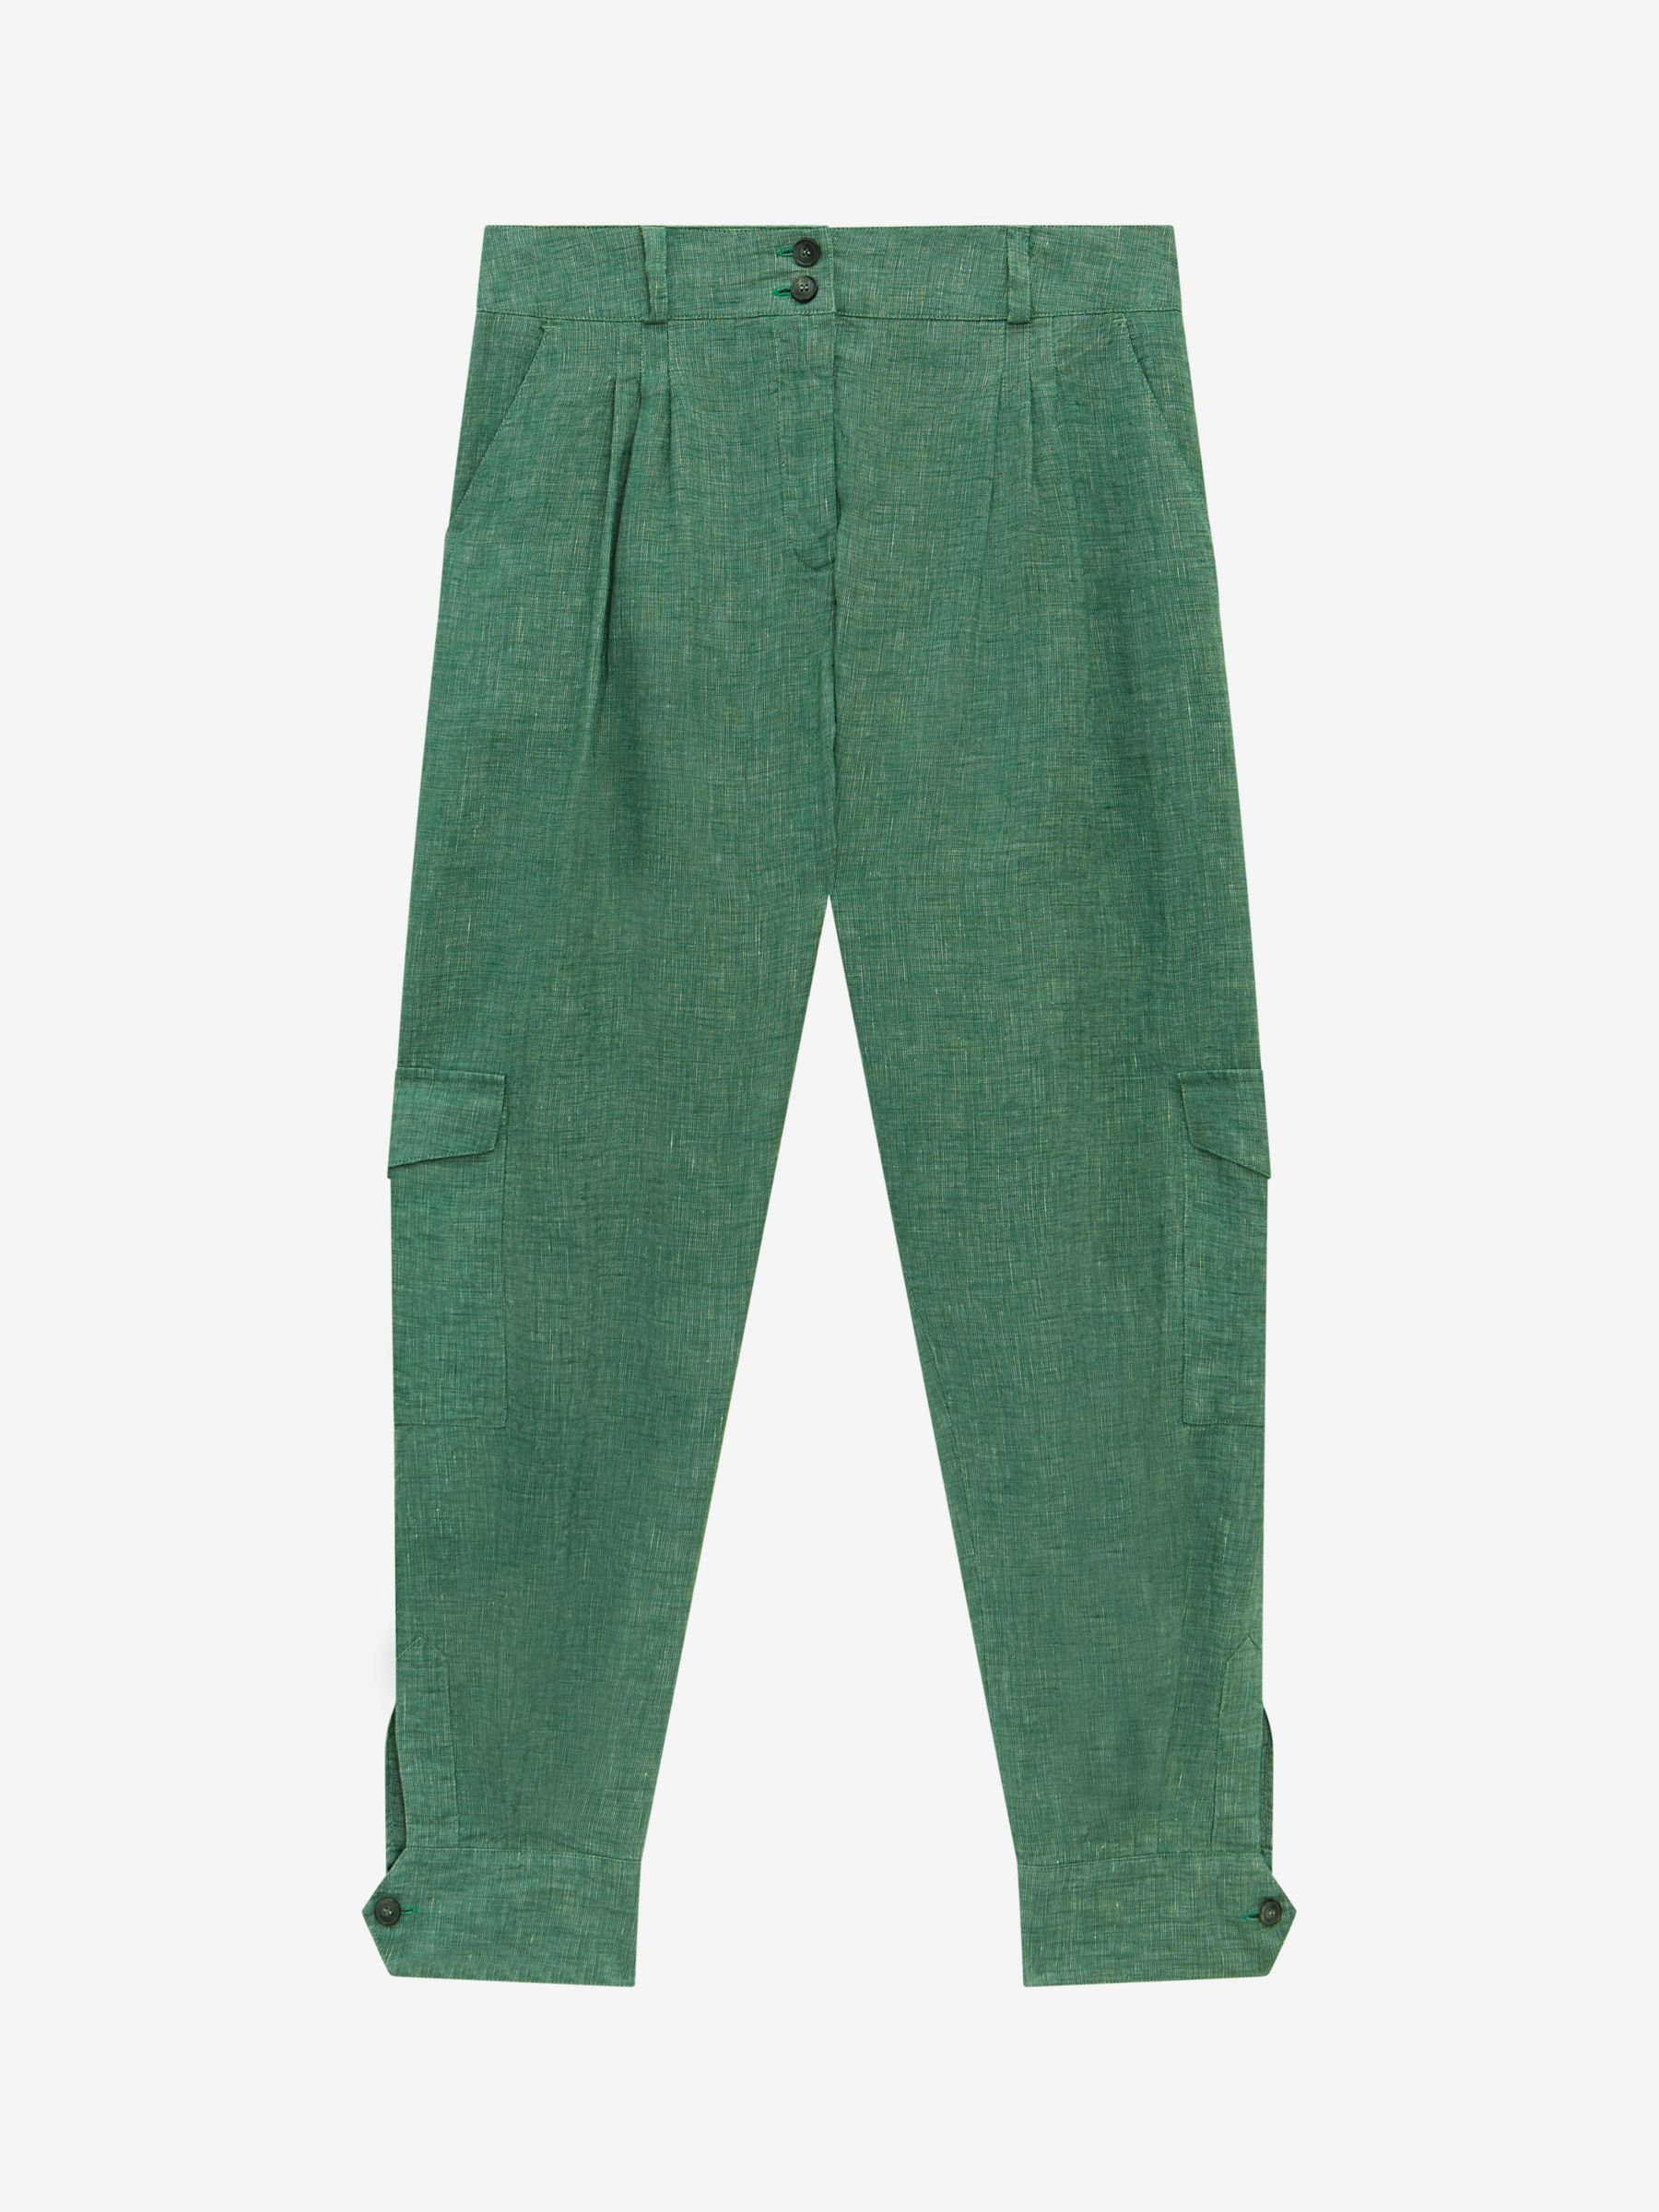 Brora Cross Dye Linen Cargo Trousers, Spruce, 6